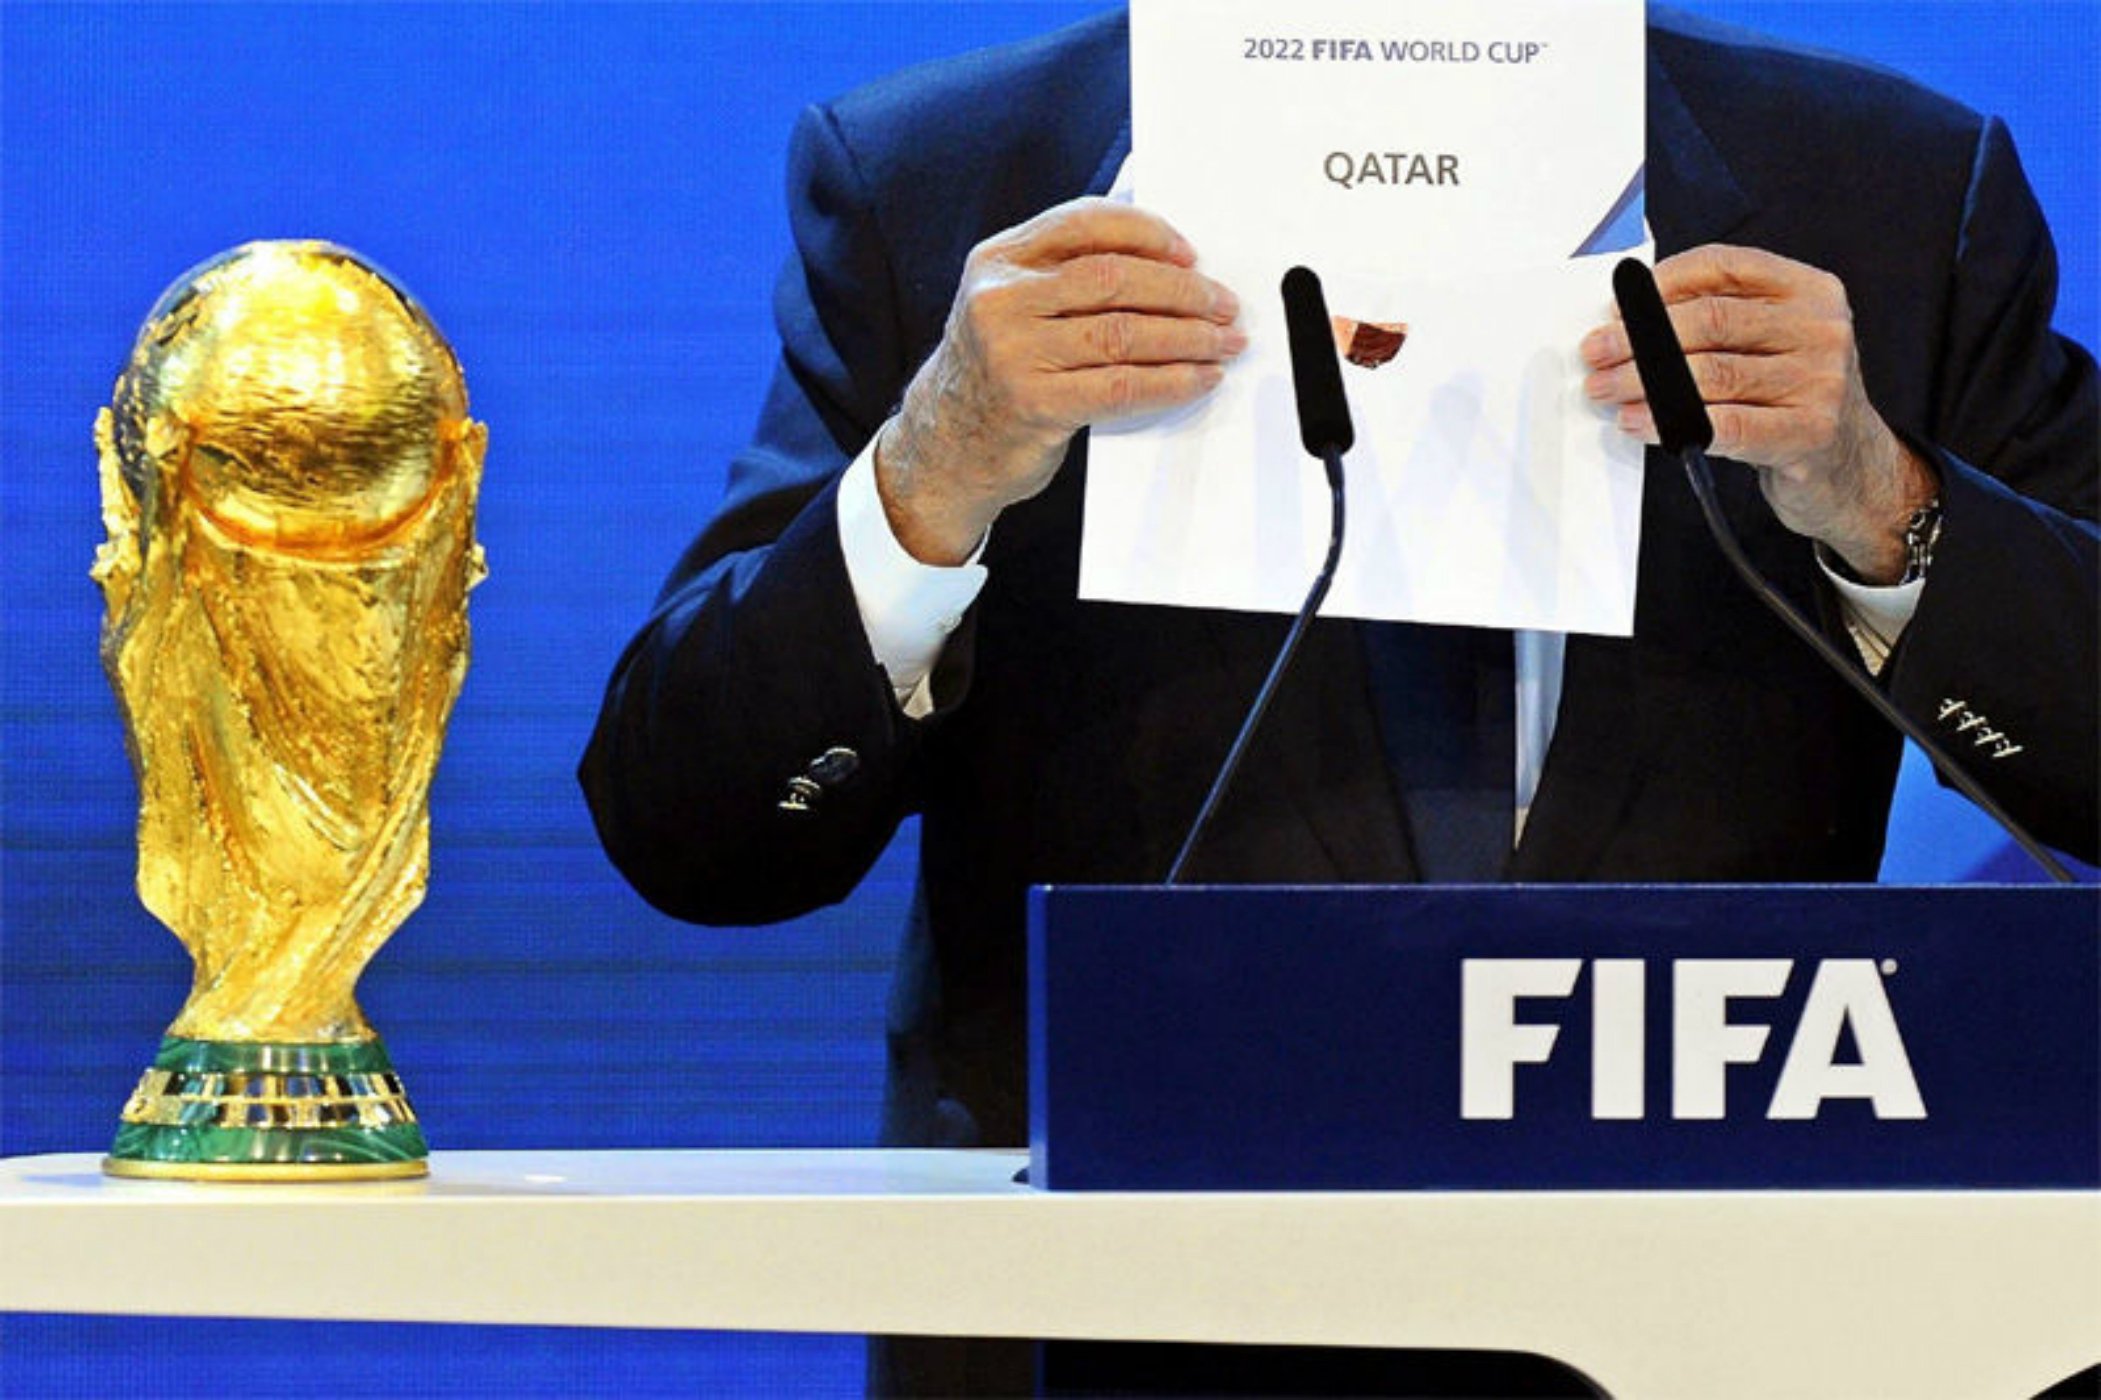 Acusan a Qatar de sabotear a las candidaturas rivales del Mundial 2022